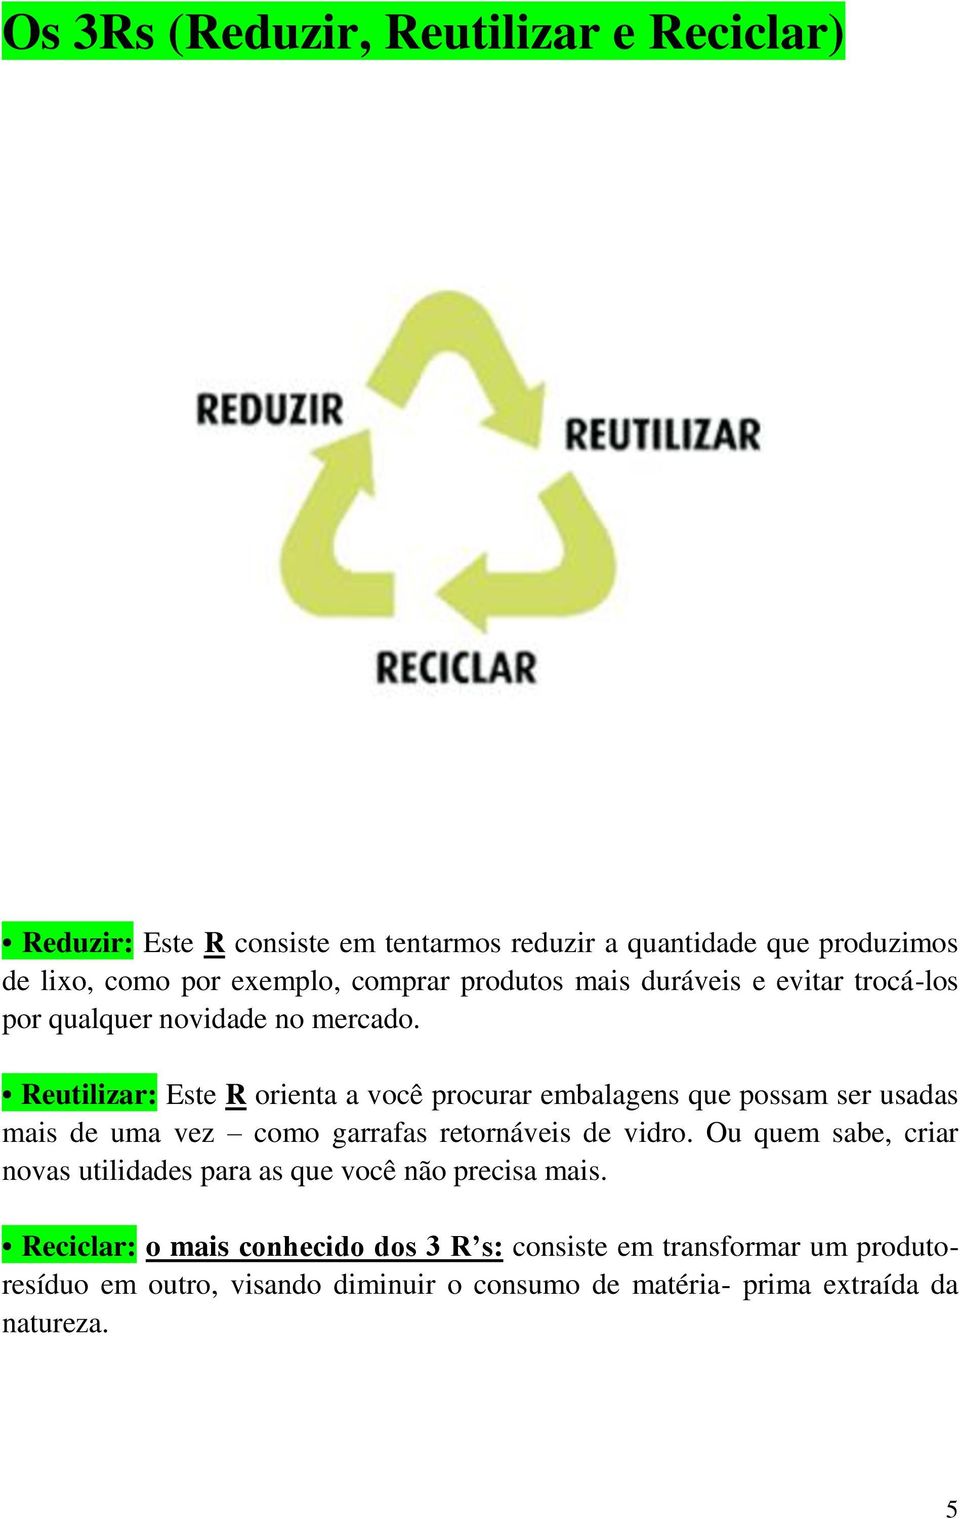 Reutilizar: Este R orienta a você procurar embalagens que possam ser usadas mais de uma vez como garrafas retornáveis de vidro.